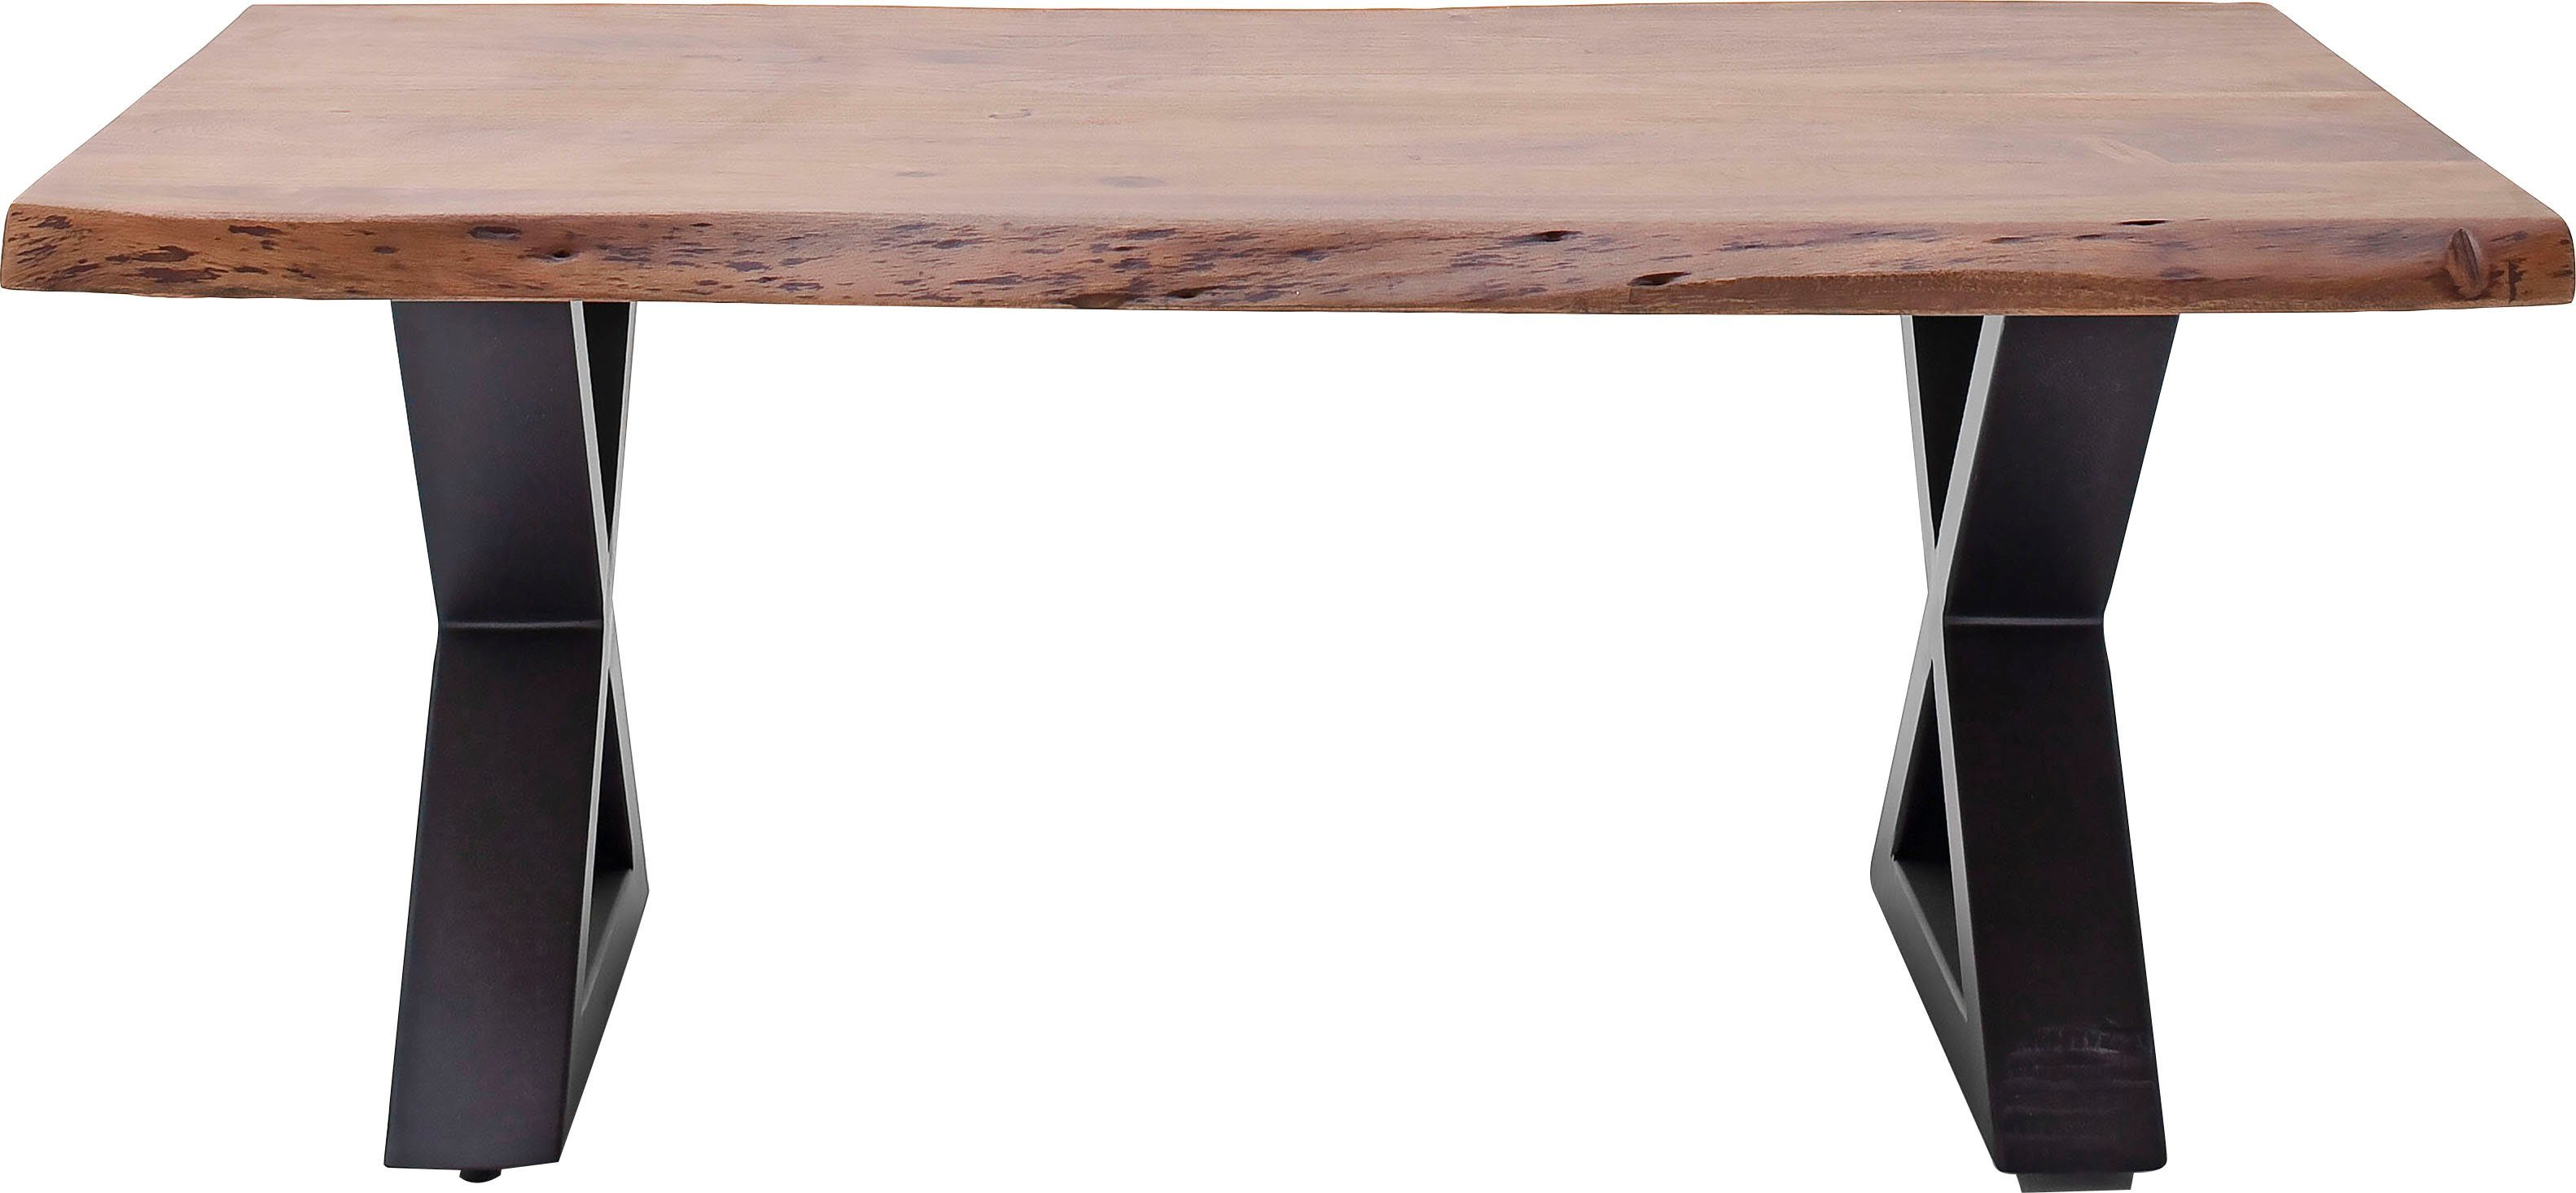 Baumkante Walnuss natürlichen lackiert Anthrazit mit Cartagena, | Couchtisch Löchern | MCA Rissen und Massivholz Couchtisch Walnuss furniture und